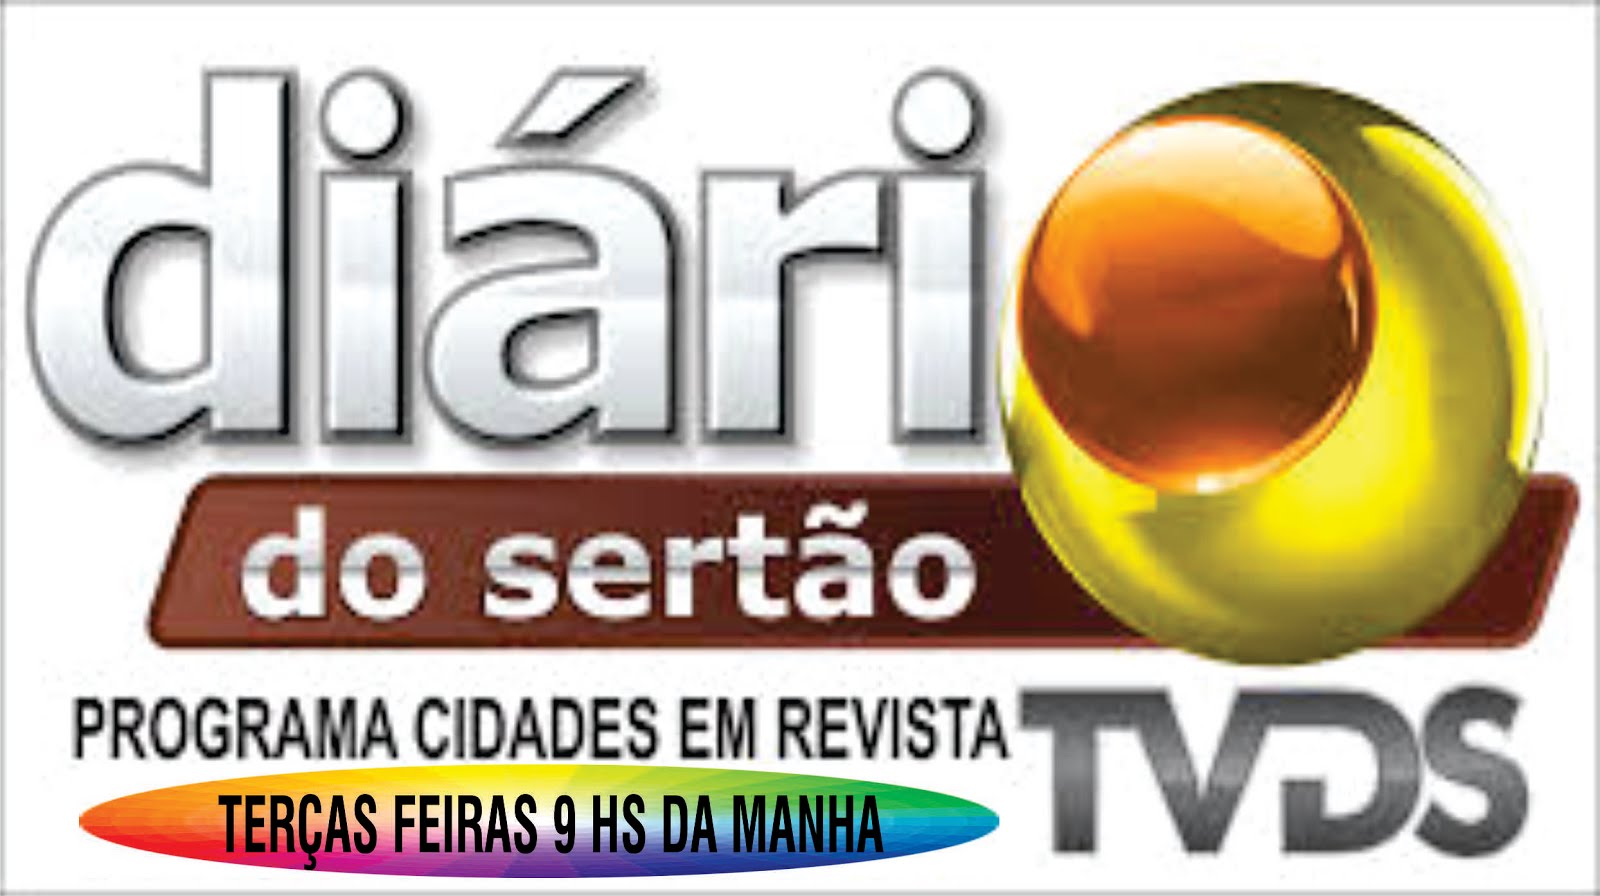 TV DIARIO DO SERTÃO  NOSSA PARTICIPAÇÃO  ESTAMOS FORA DO AR POR CONTA  DO COVID  19